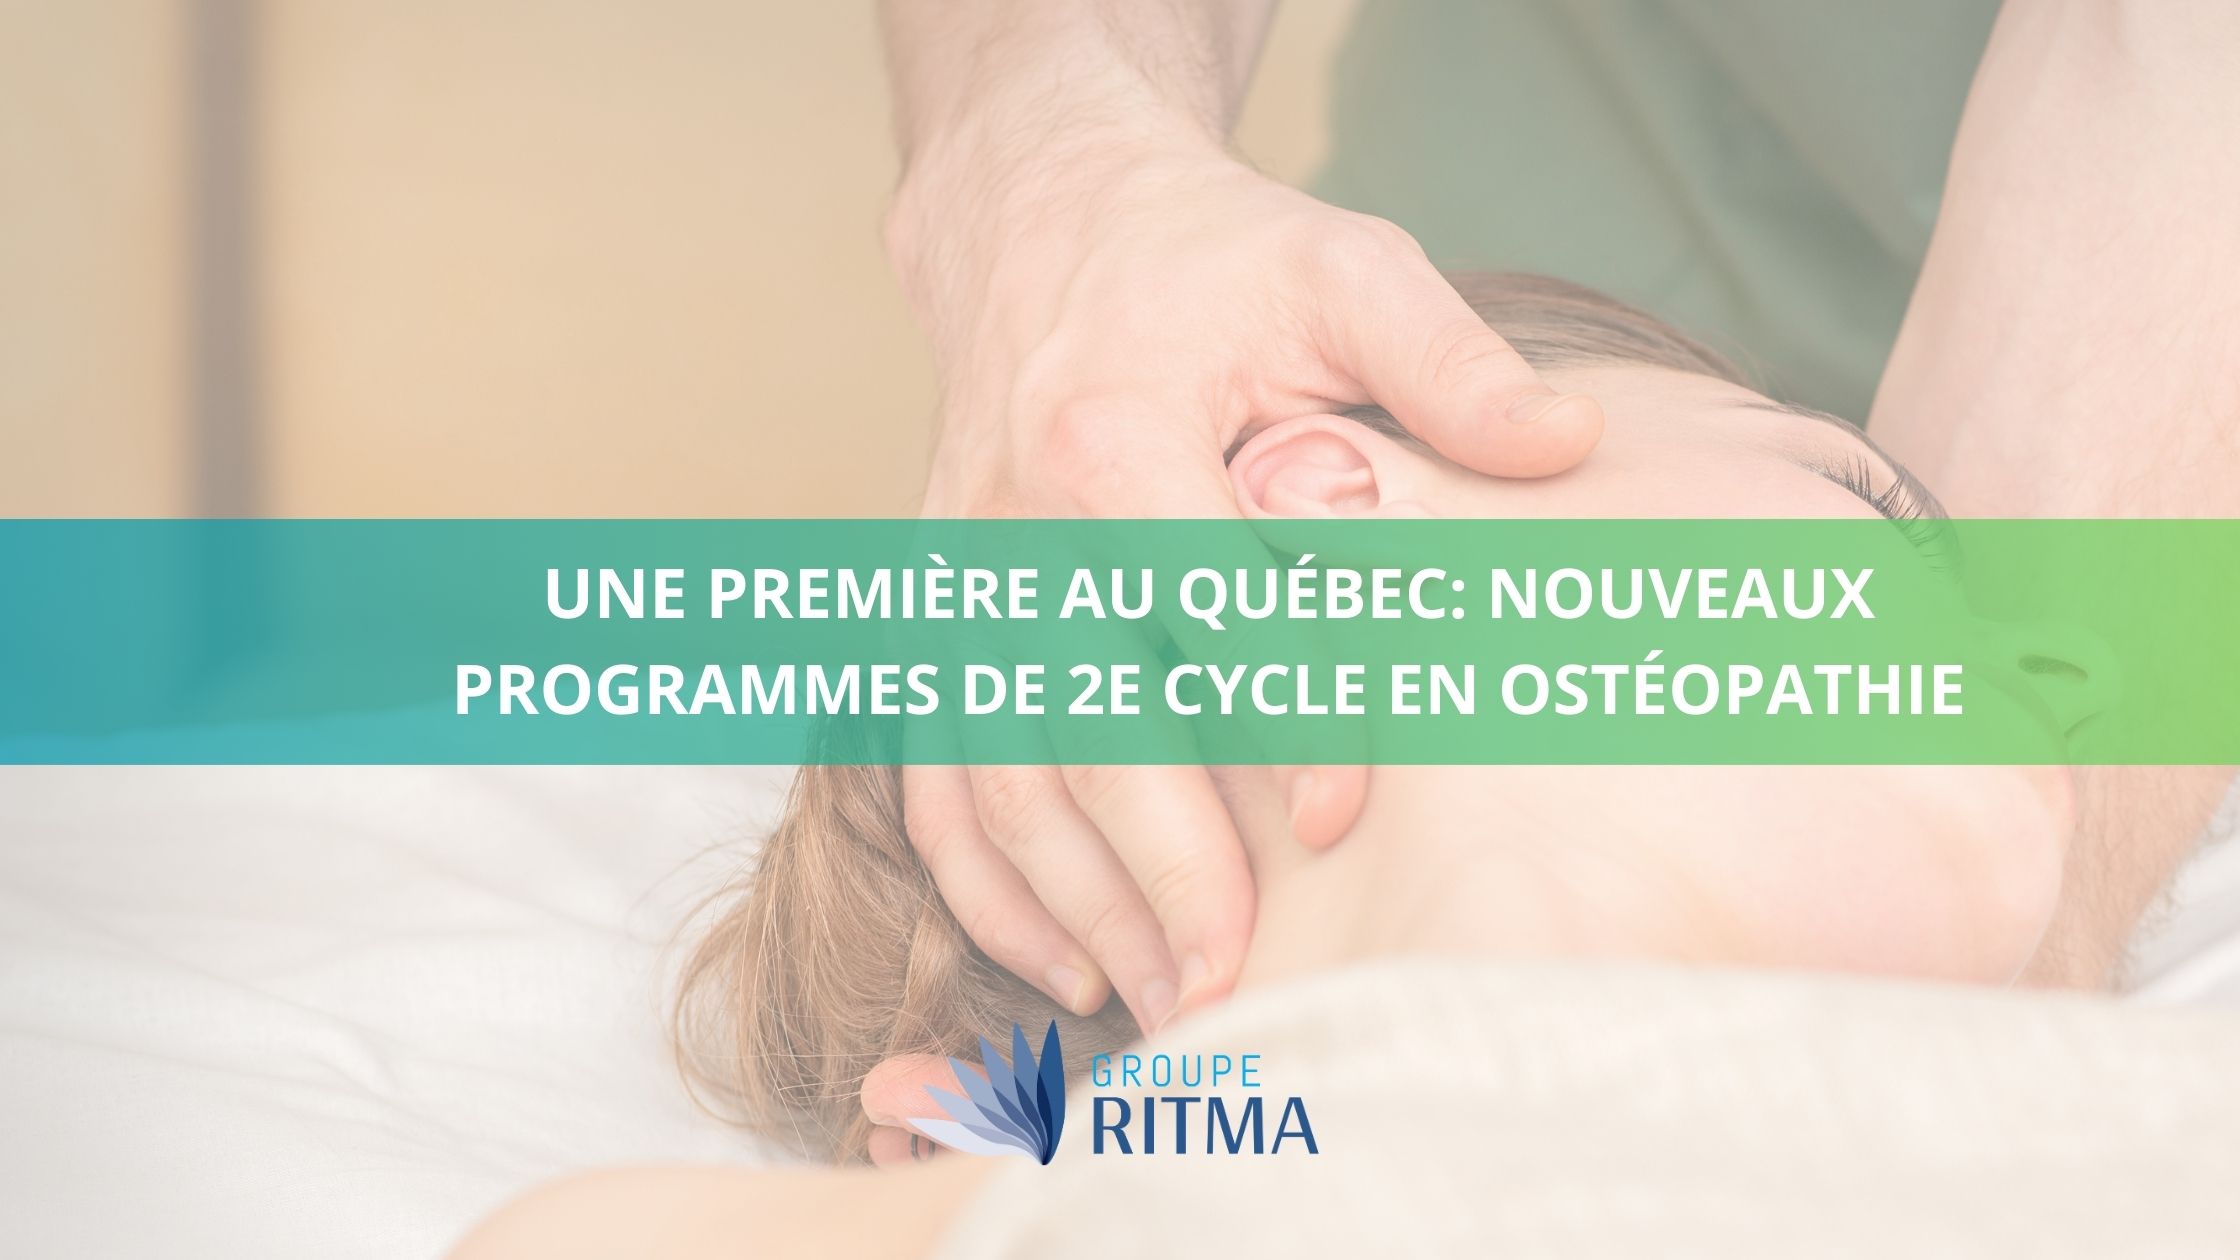 Une première au Québec : nouveaux programmes de 2e cycle en ostéopathie